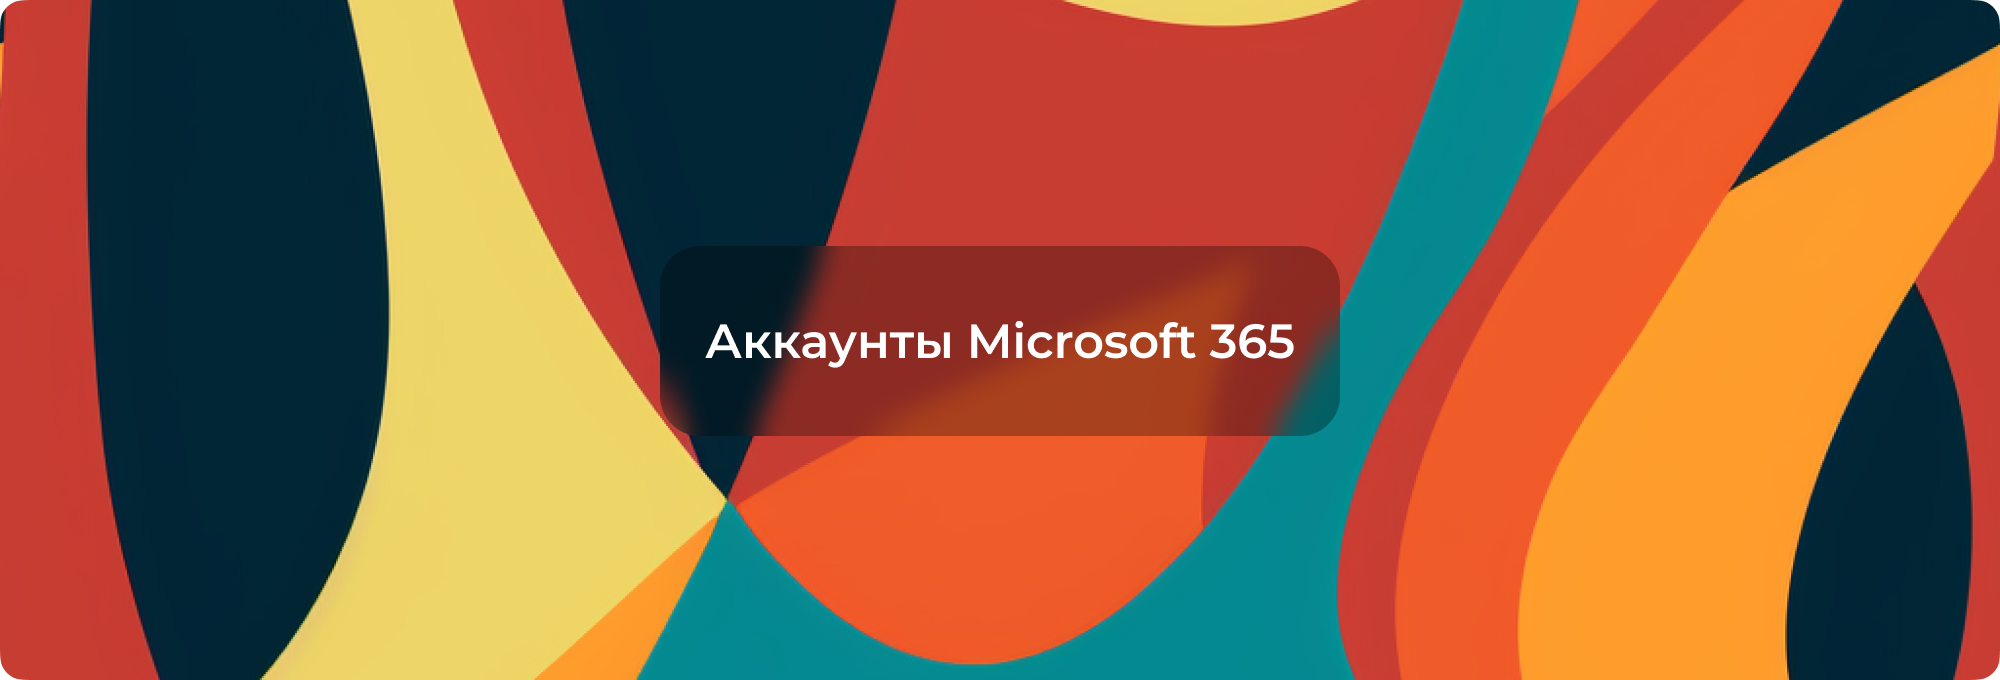 Аккаунт Microsoft 365